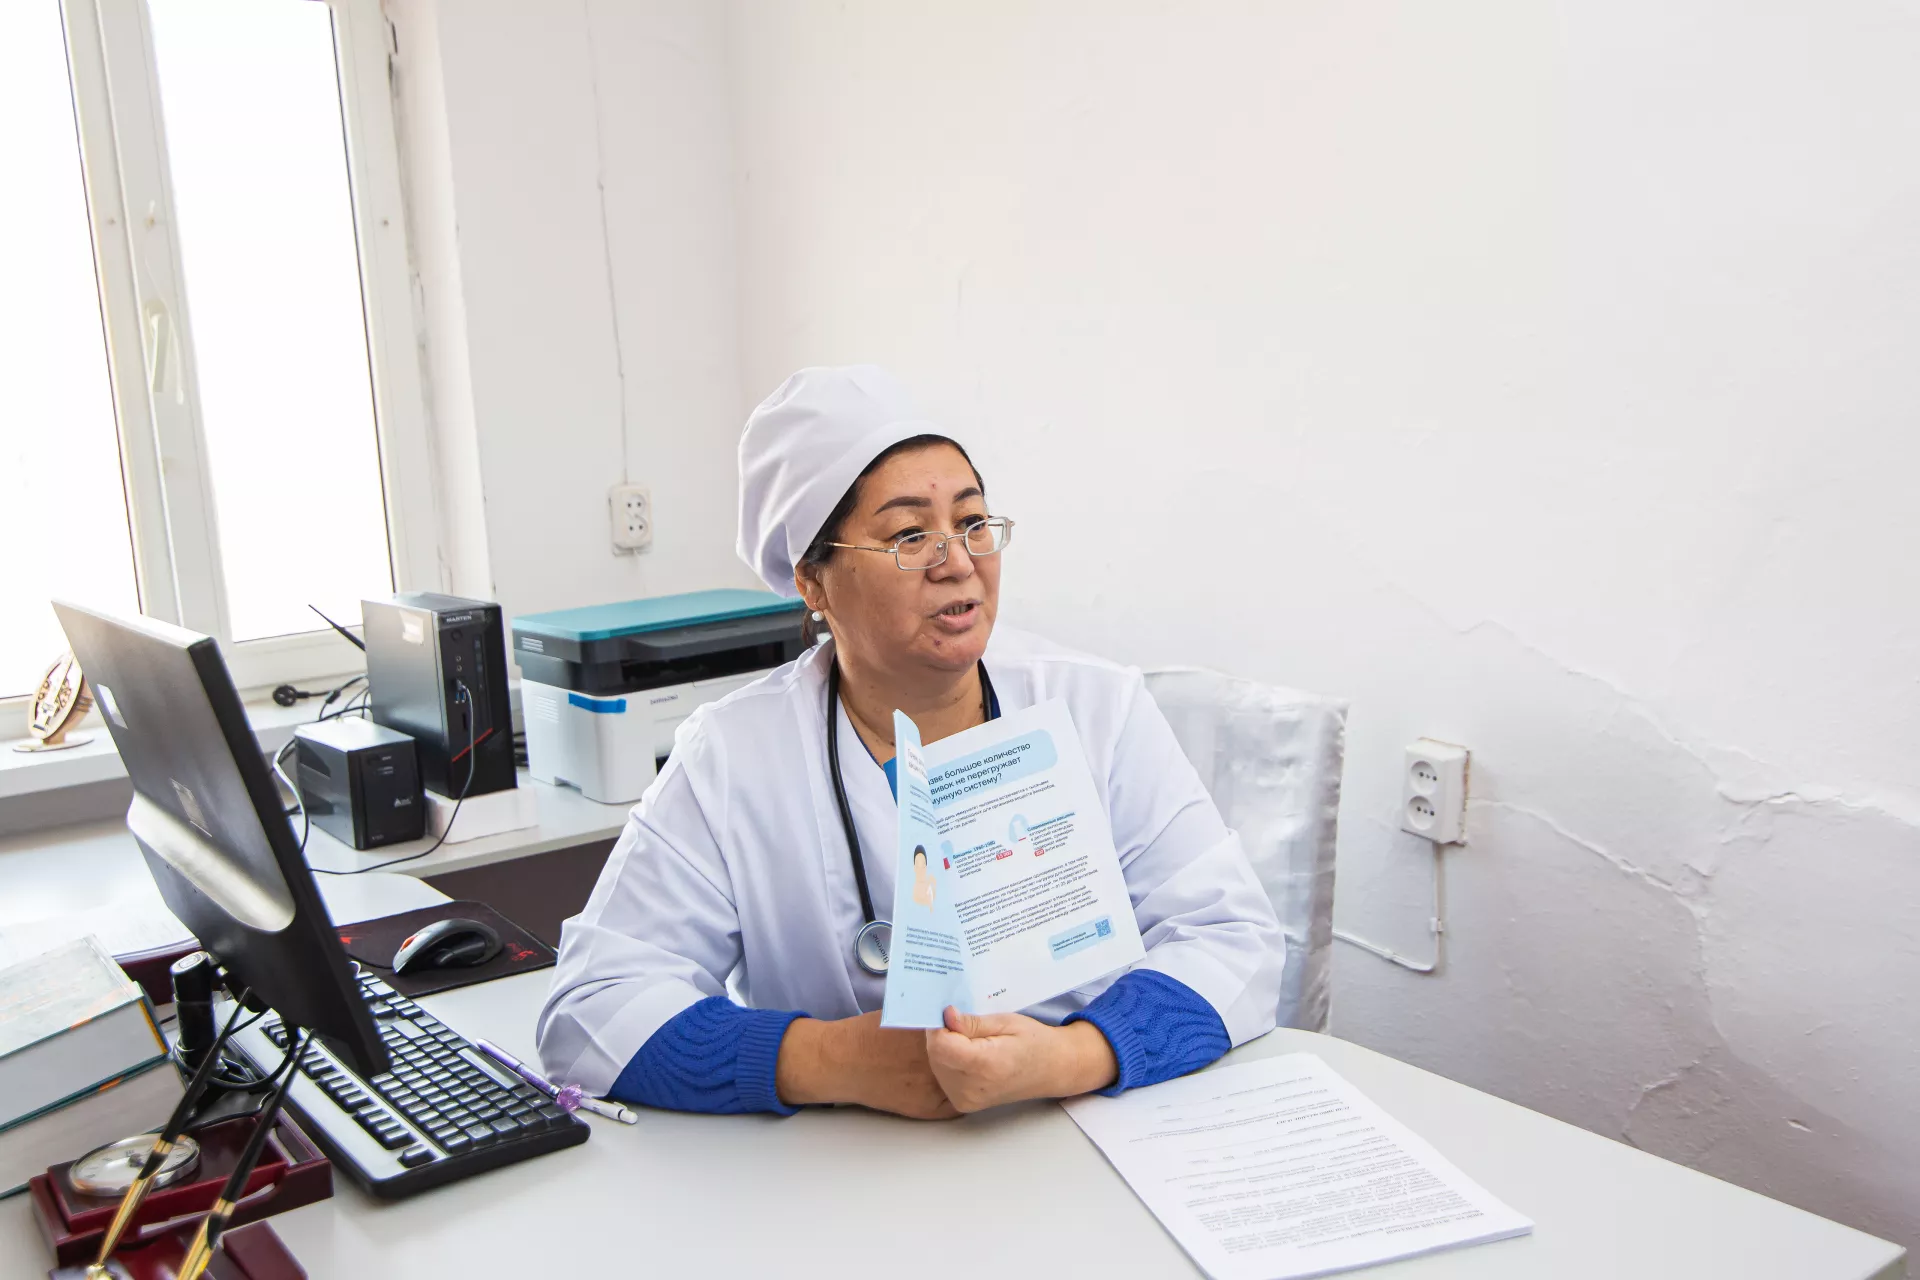 Врач-педиатр Картабаева Алия Жумагуловна проводит ознакомительную беседу с молодыми матерями на тему детского здоровья. Бозколь, Казахстан.